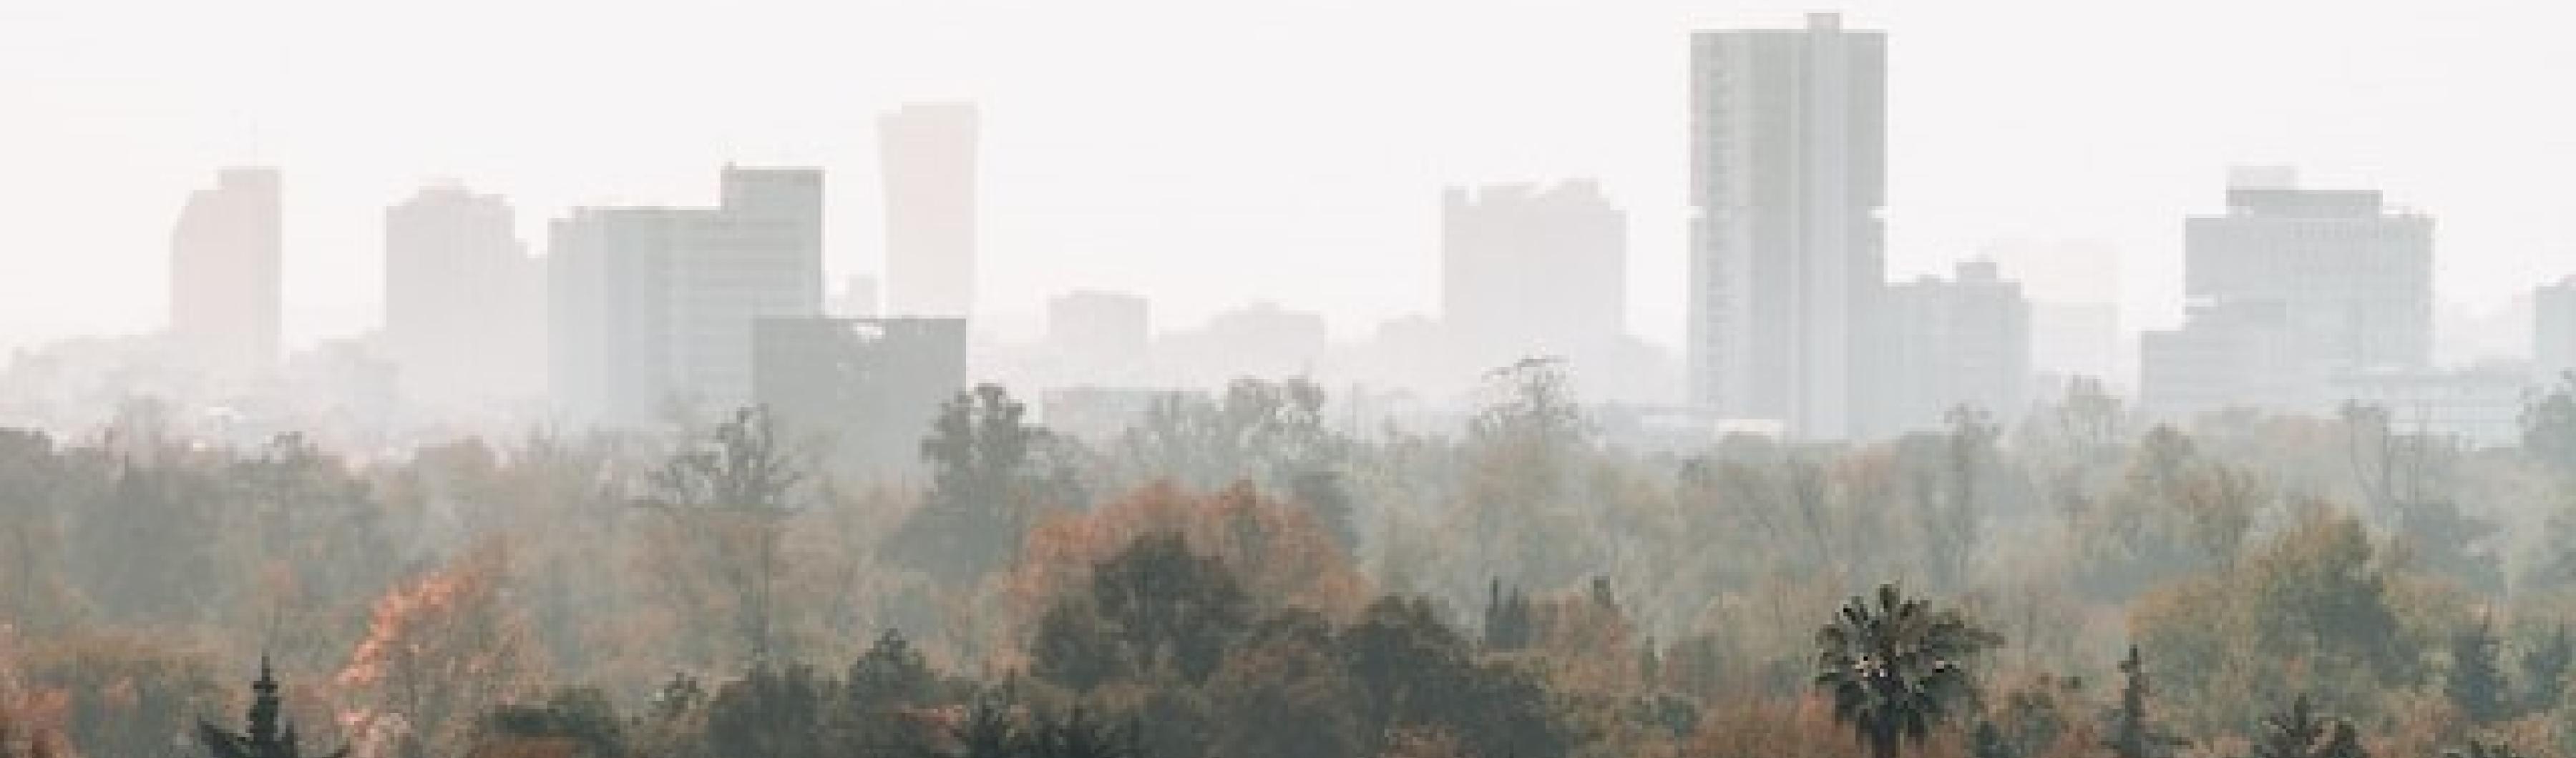 vue de la ville de mexico dans le smog